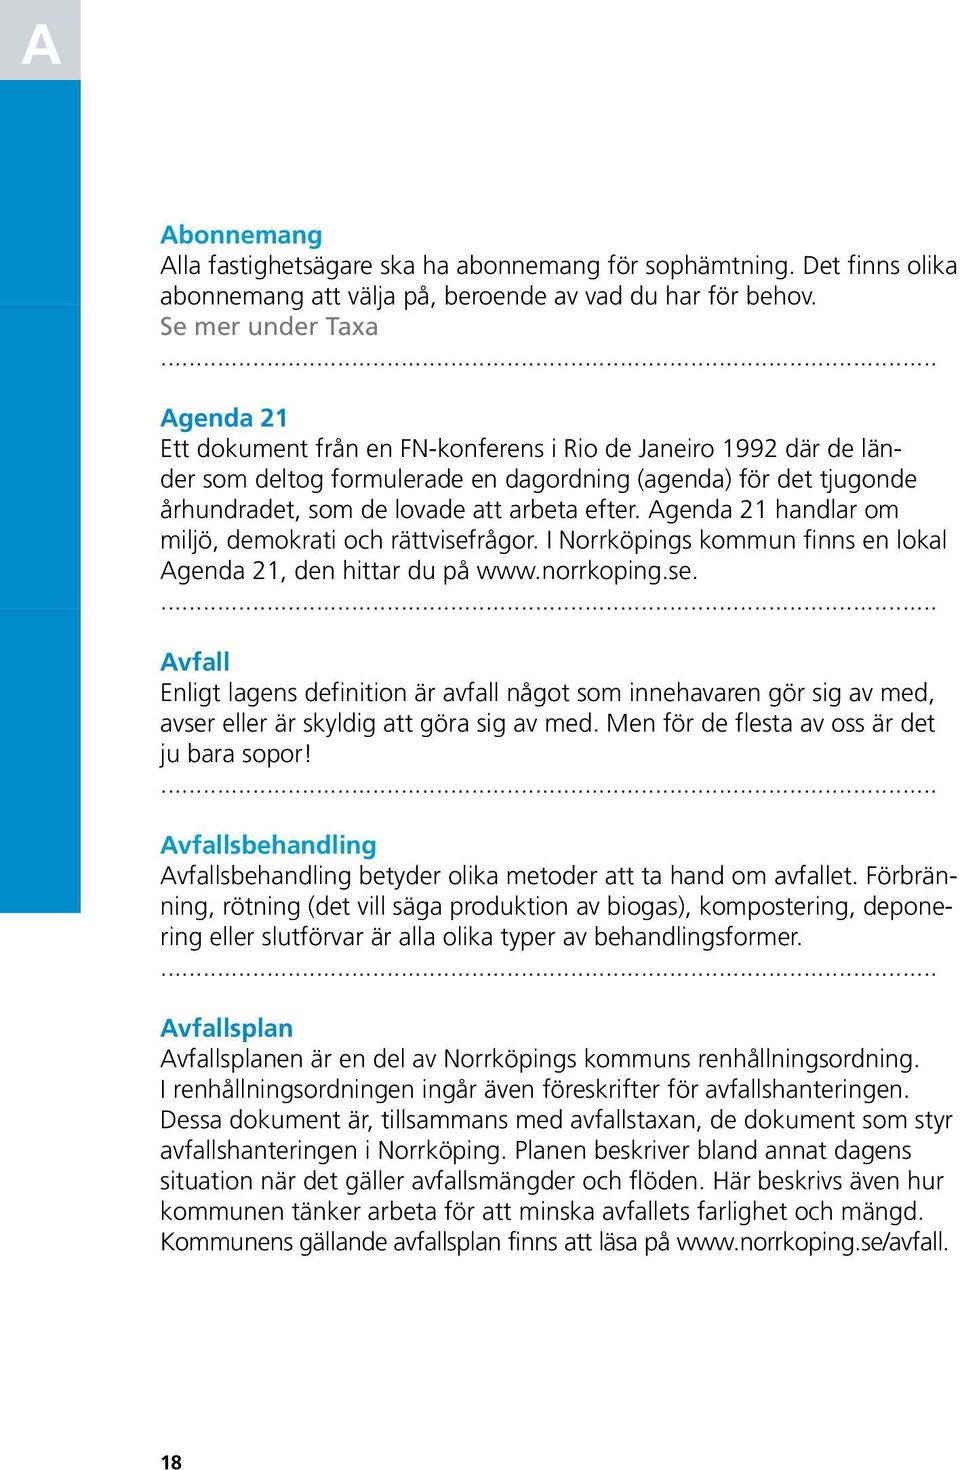 efter. Agenda 21 handlar om miljö, demokrati och rättvisefrågor. I Norrköpings kommun finns en lokal Agenda 21, den hittar du på www.norrkoping.se. Avfall Enligt lagens definition är avfall något som innehavaren gör sig av med, avser eller är skyldig att göra sig av med.